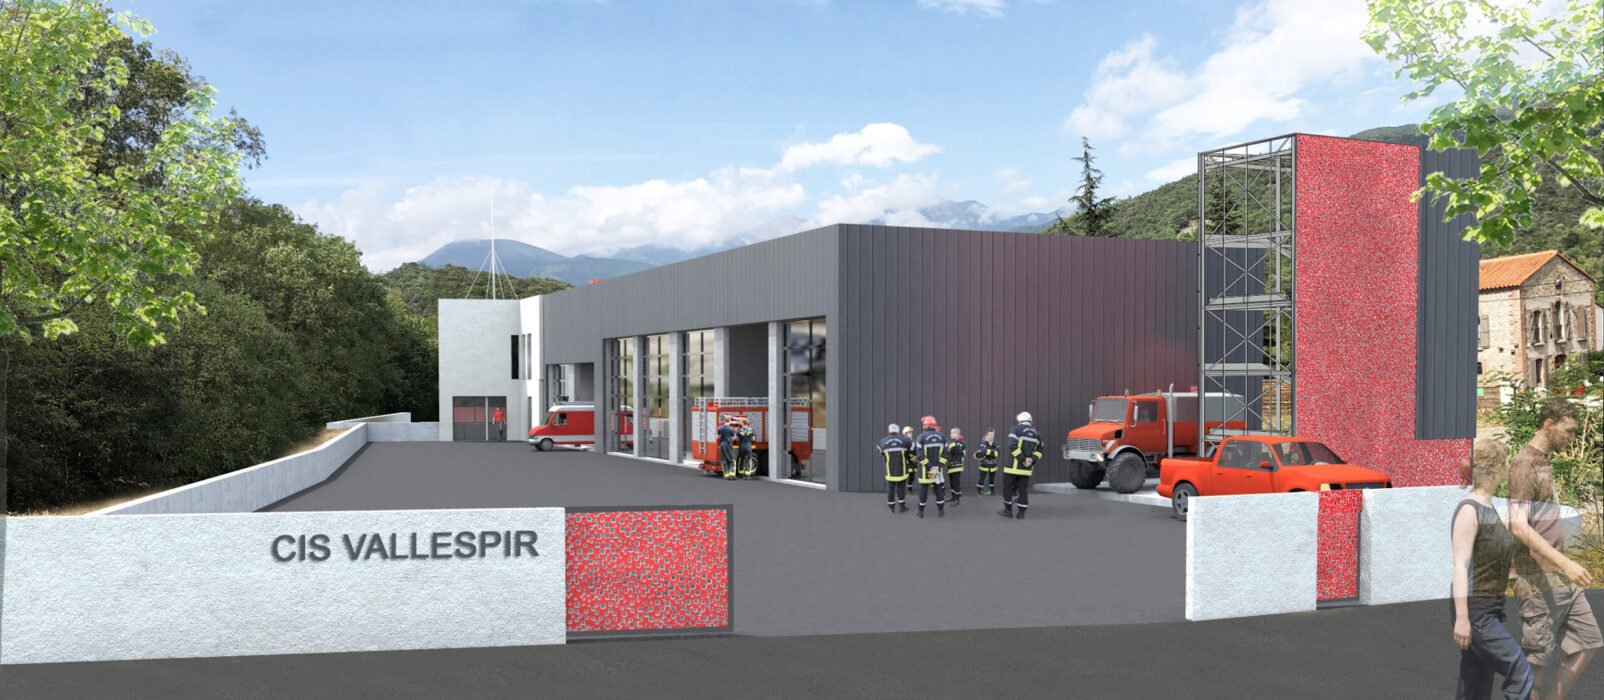 Visuel CIS Vallespir construction centre de secours SDIS des Pyrénées Orientales